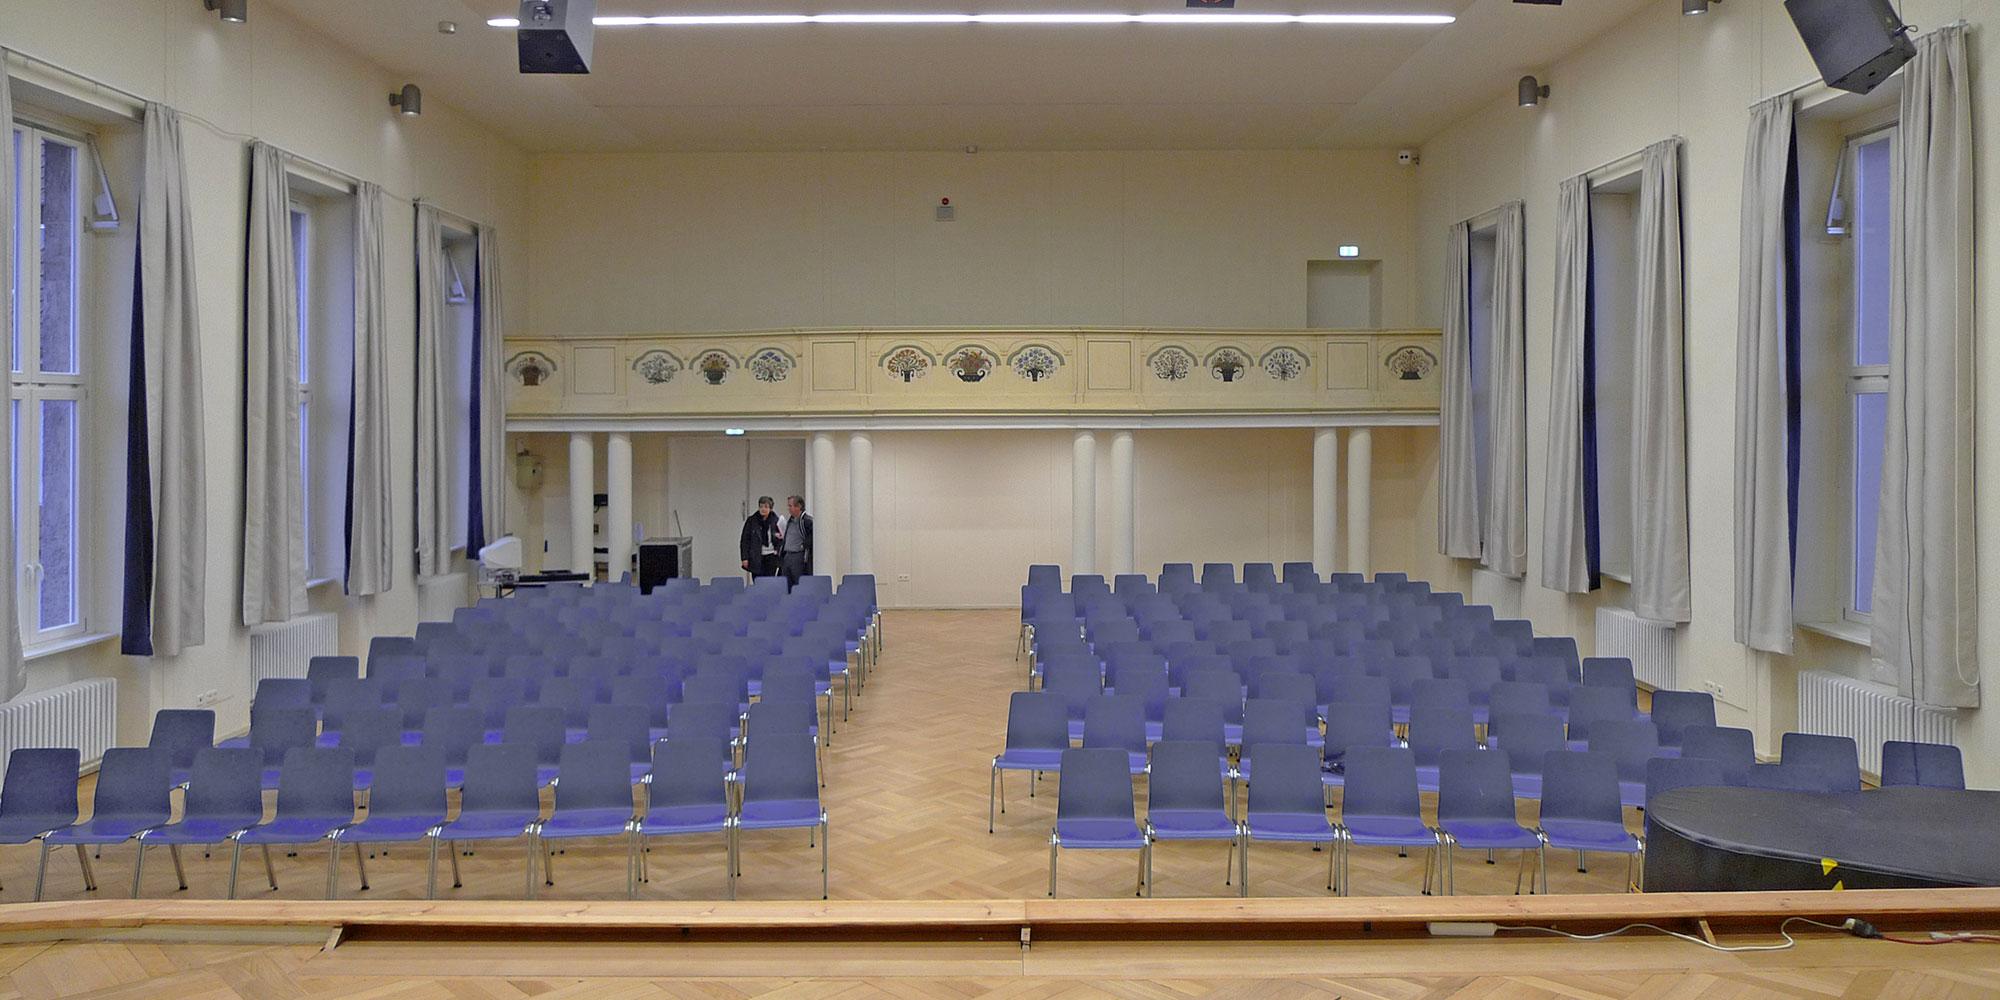 Auditoire restauré  avec des sièges en rangée